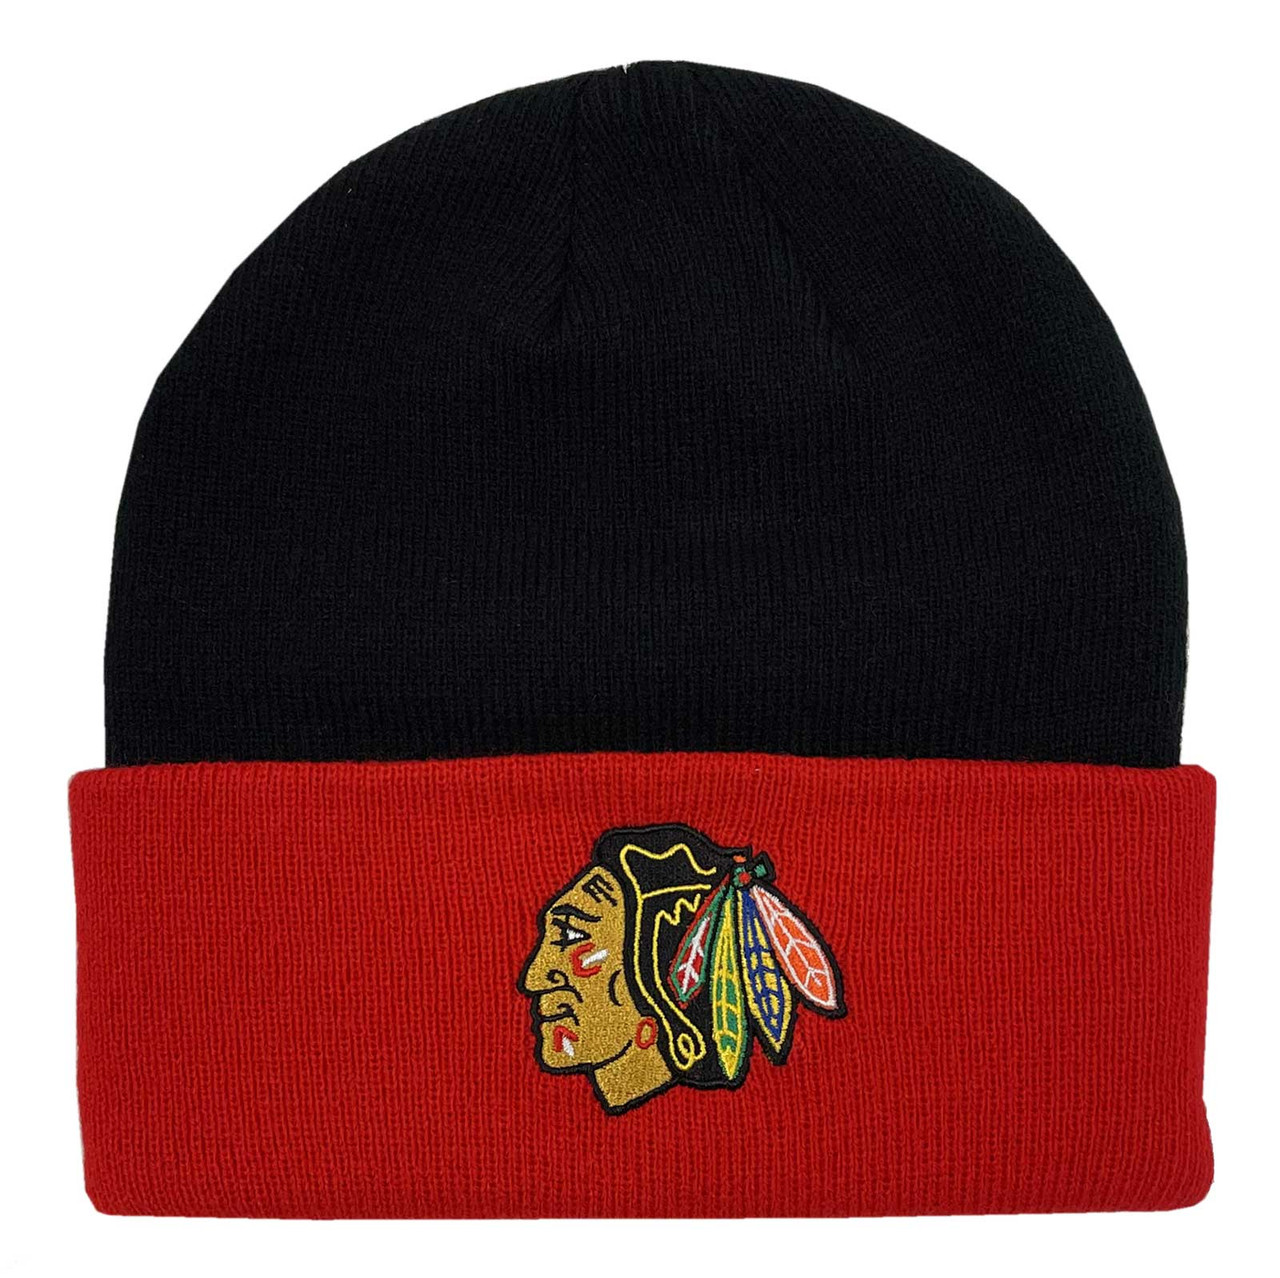 Adidas Men's Chicago Blackhawks NHL Hockey Knit Hat Beanie Skull Cap ...